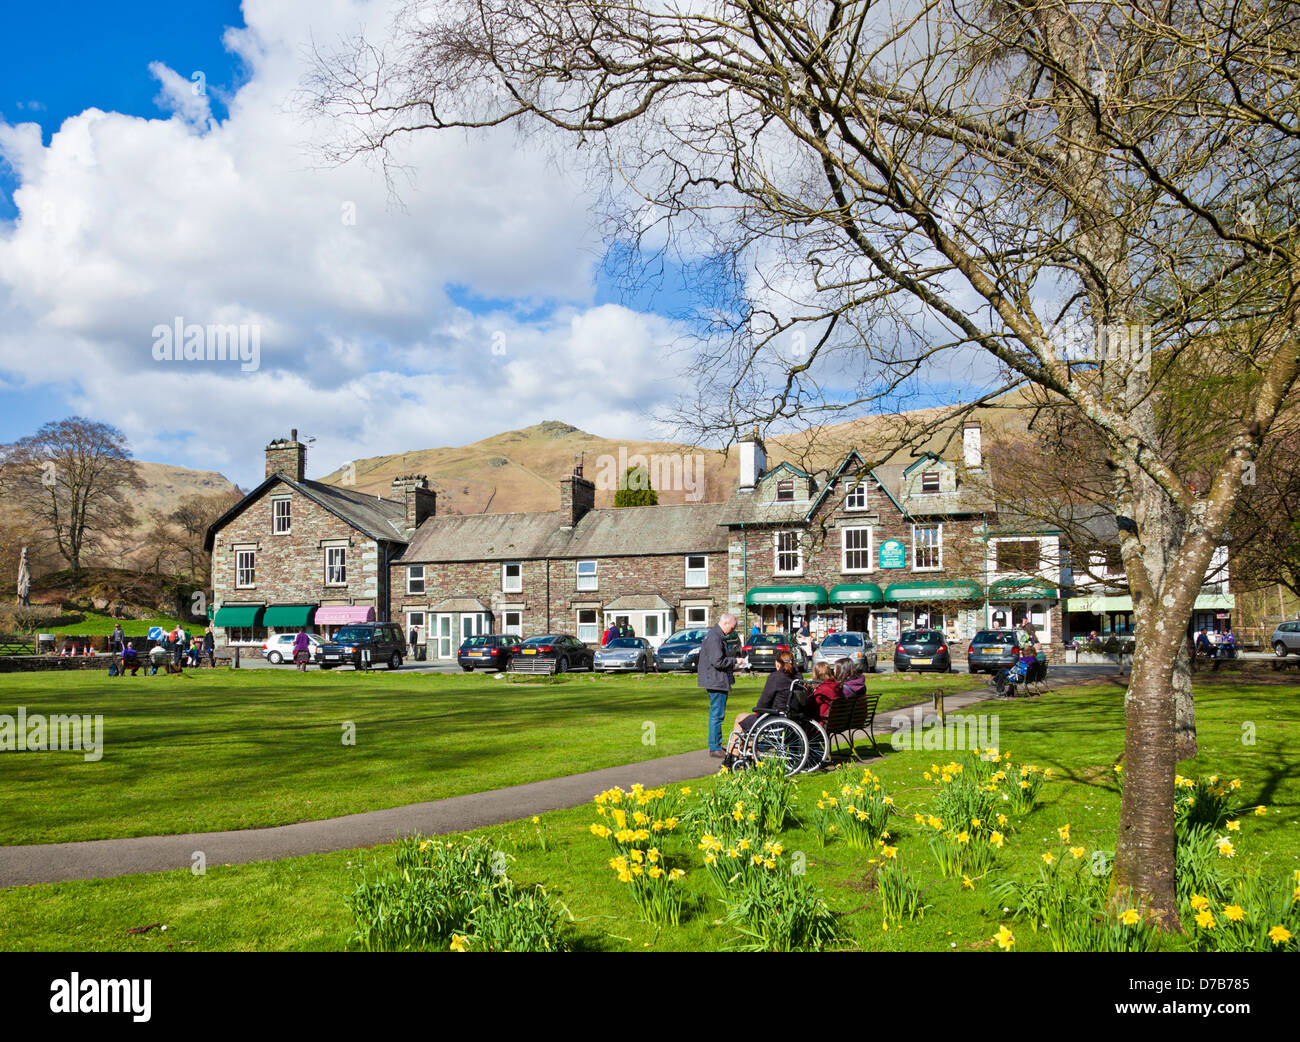 Les gens assis sur des bancs autour du village vert profitant du soleil du printemps à Grasmere Cumbria England UK GB EU Europe Banque D'Images